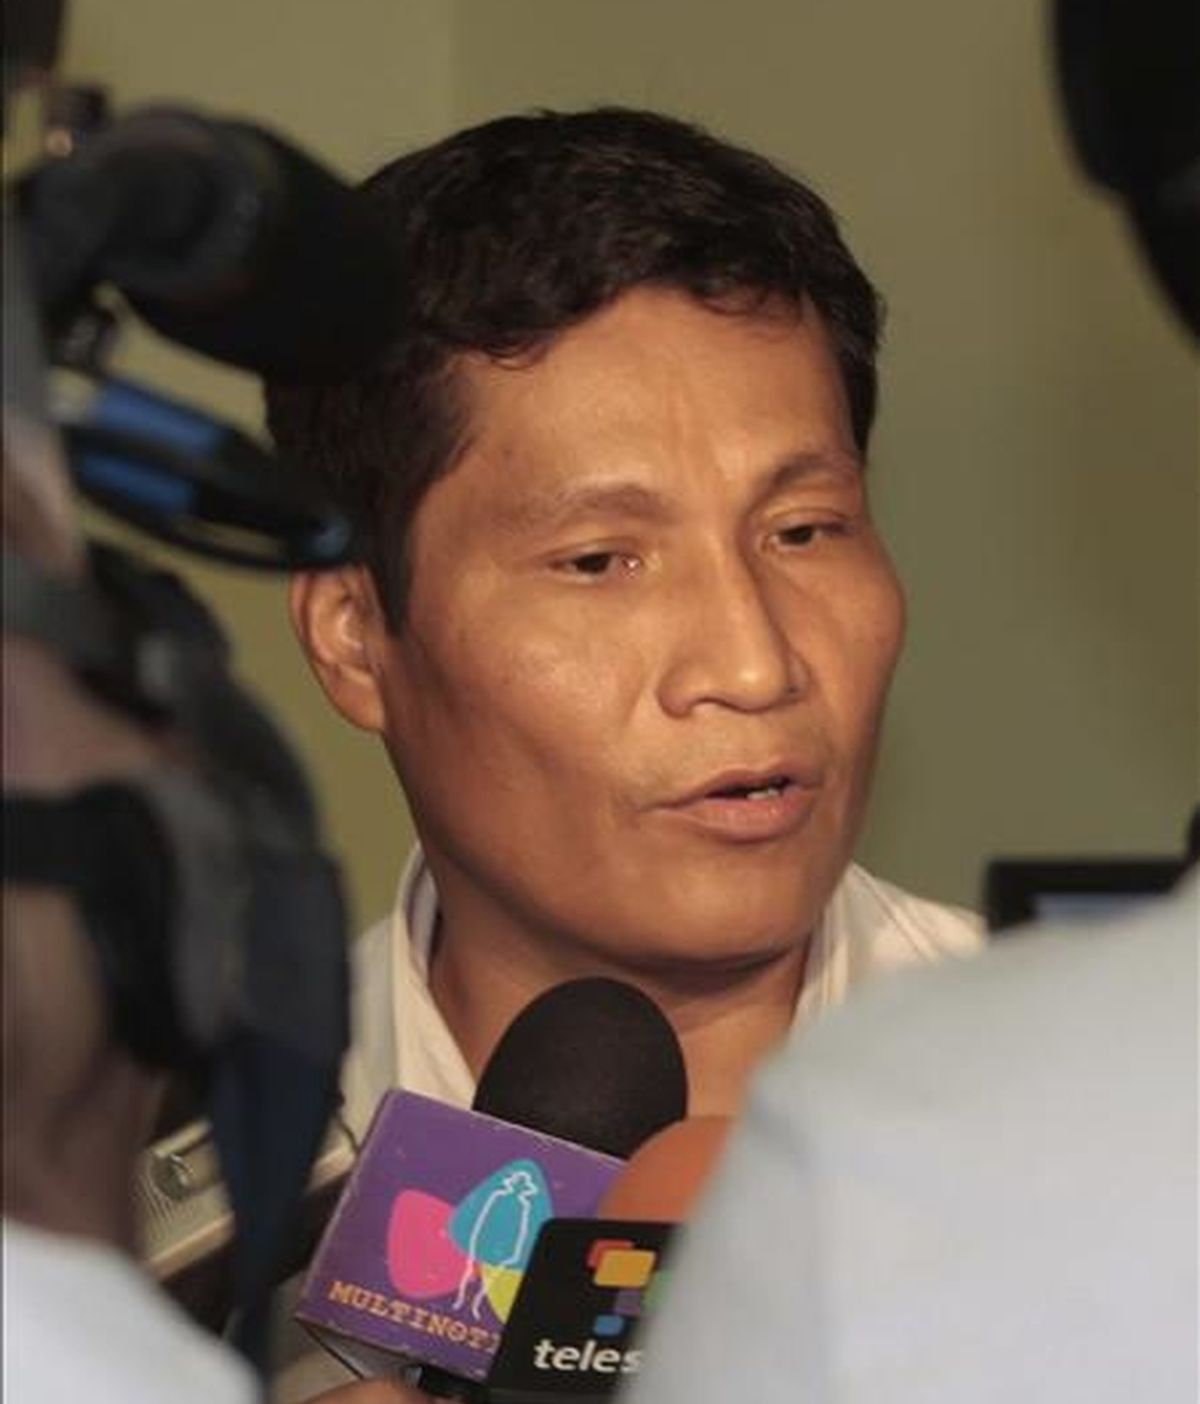 Fotografía cedida en la que aparece el líder indígena peruano Alberto Pizango mientras brinda declaraciones ante algunos medios de comunicación a su llegada al aeropuerto internacional de Managua (Nicaragua). EFE